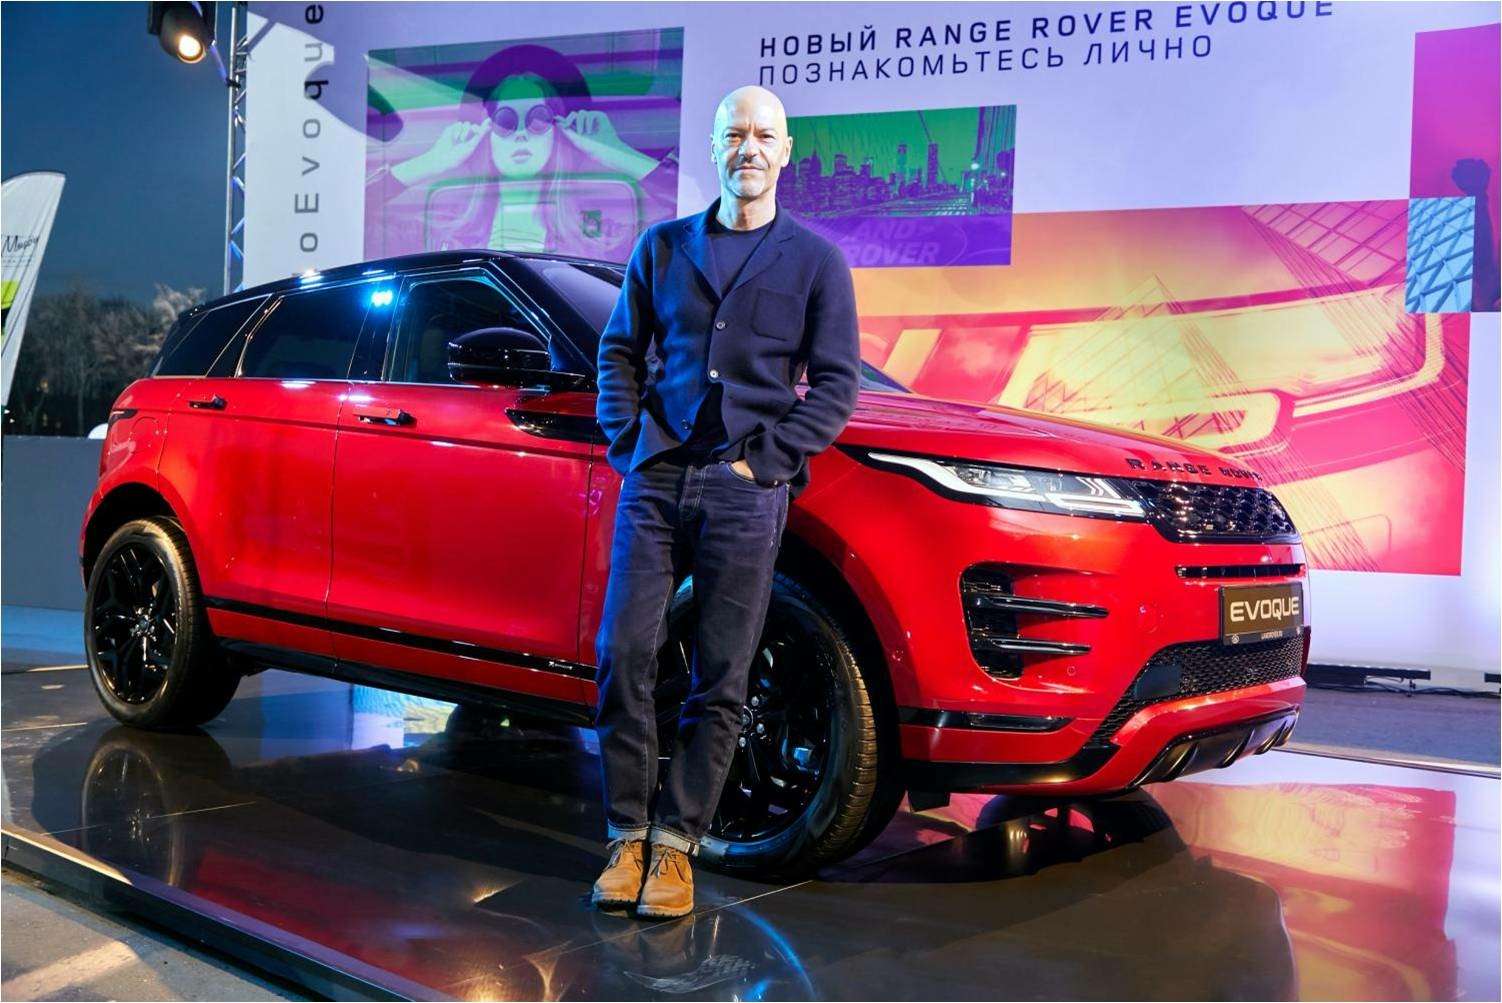 Новый Range Rover Evoque представили в окружении звезд